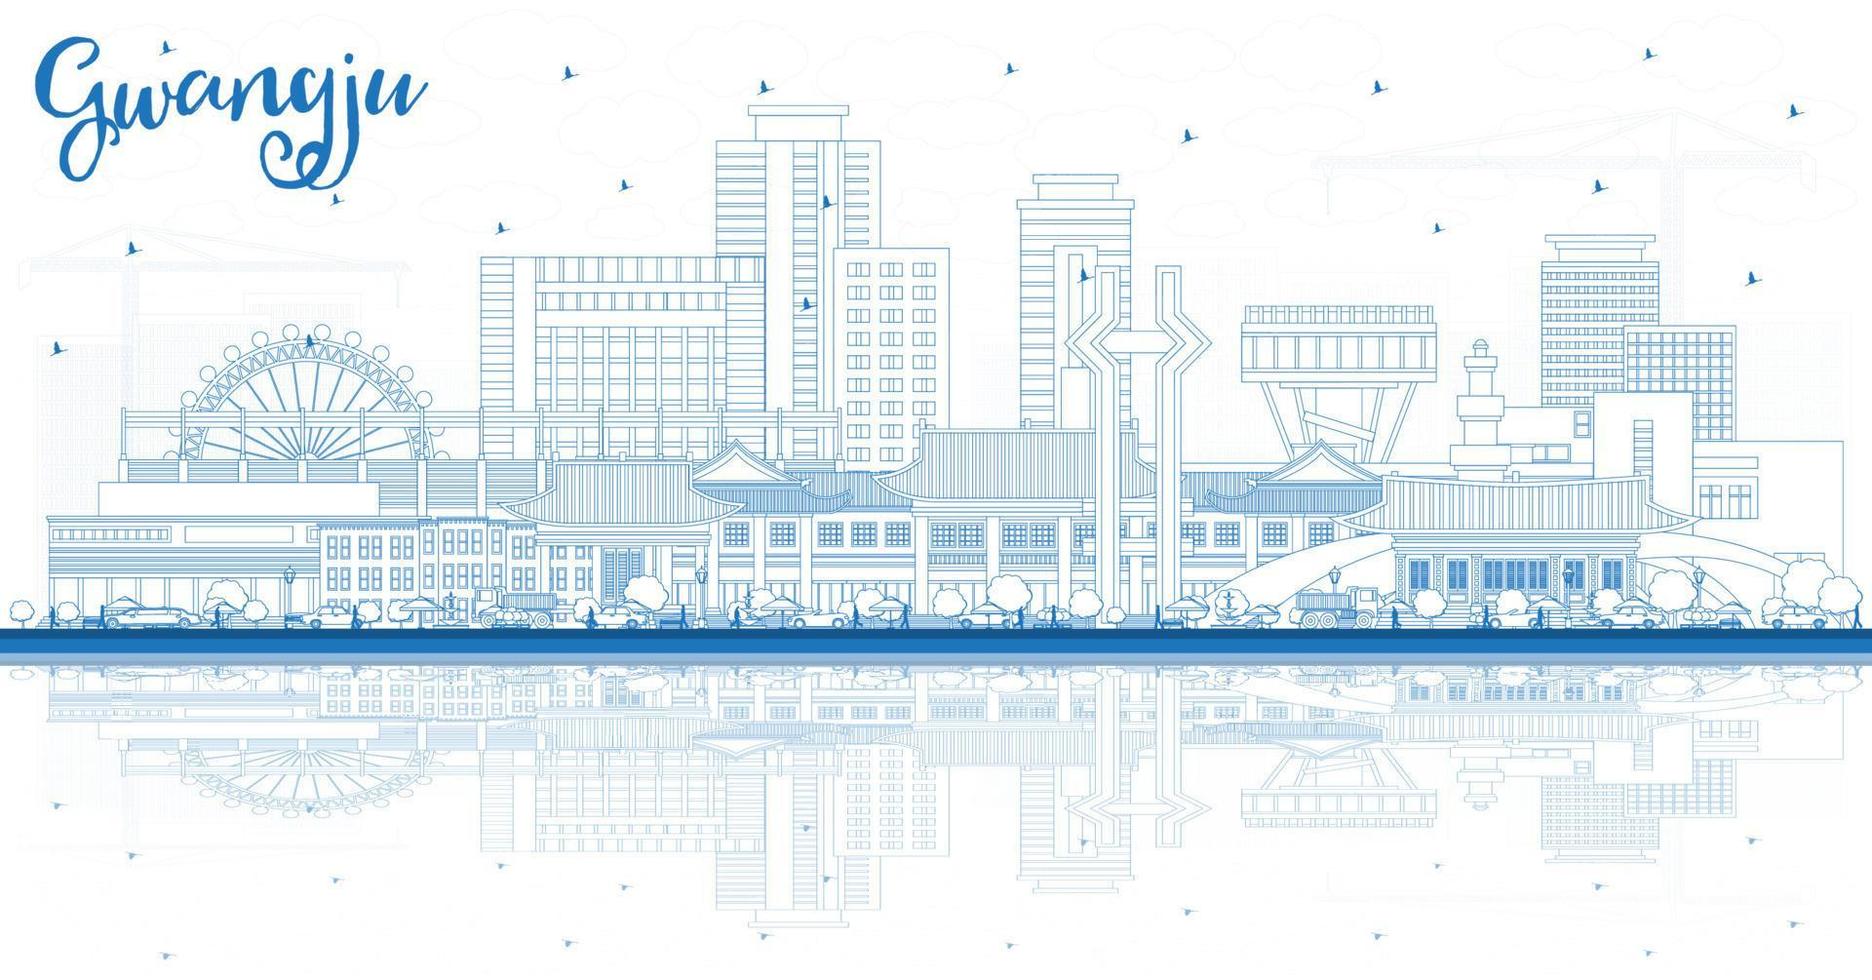 delinear el horizonte de la ciudad de gwangju corea del sur con edificios azules y reflejos. vector